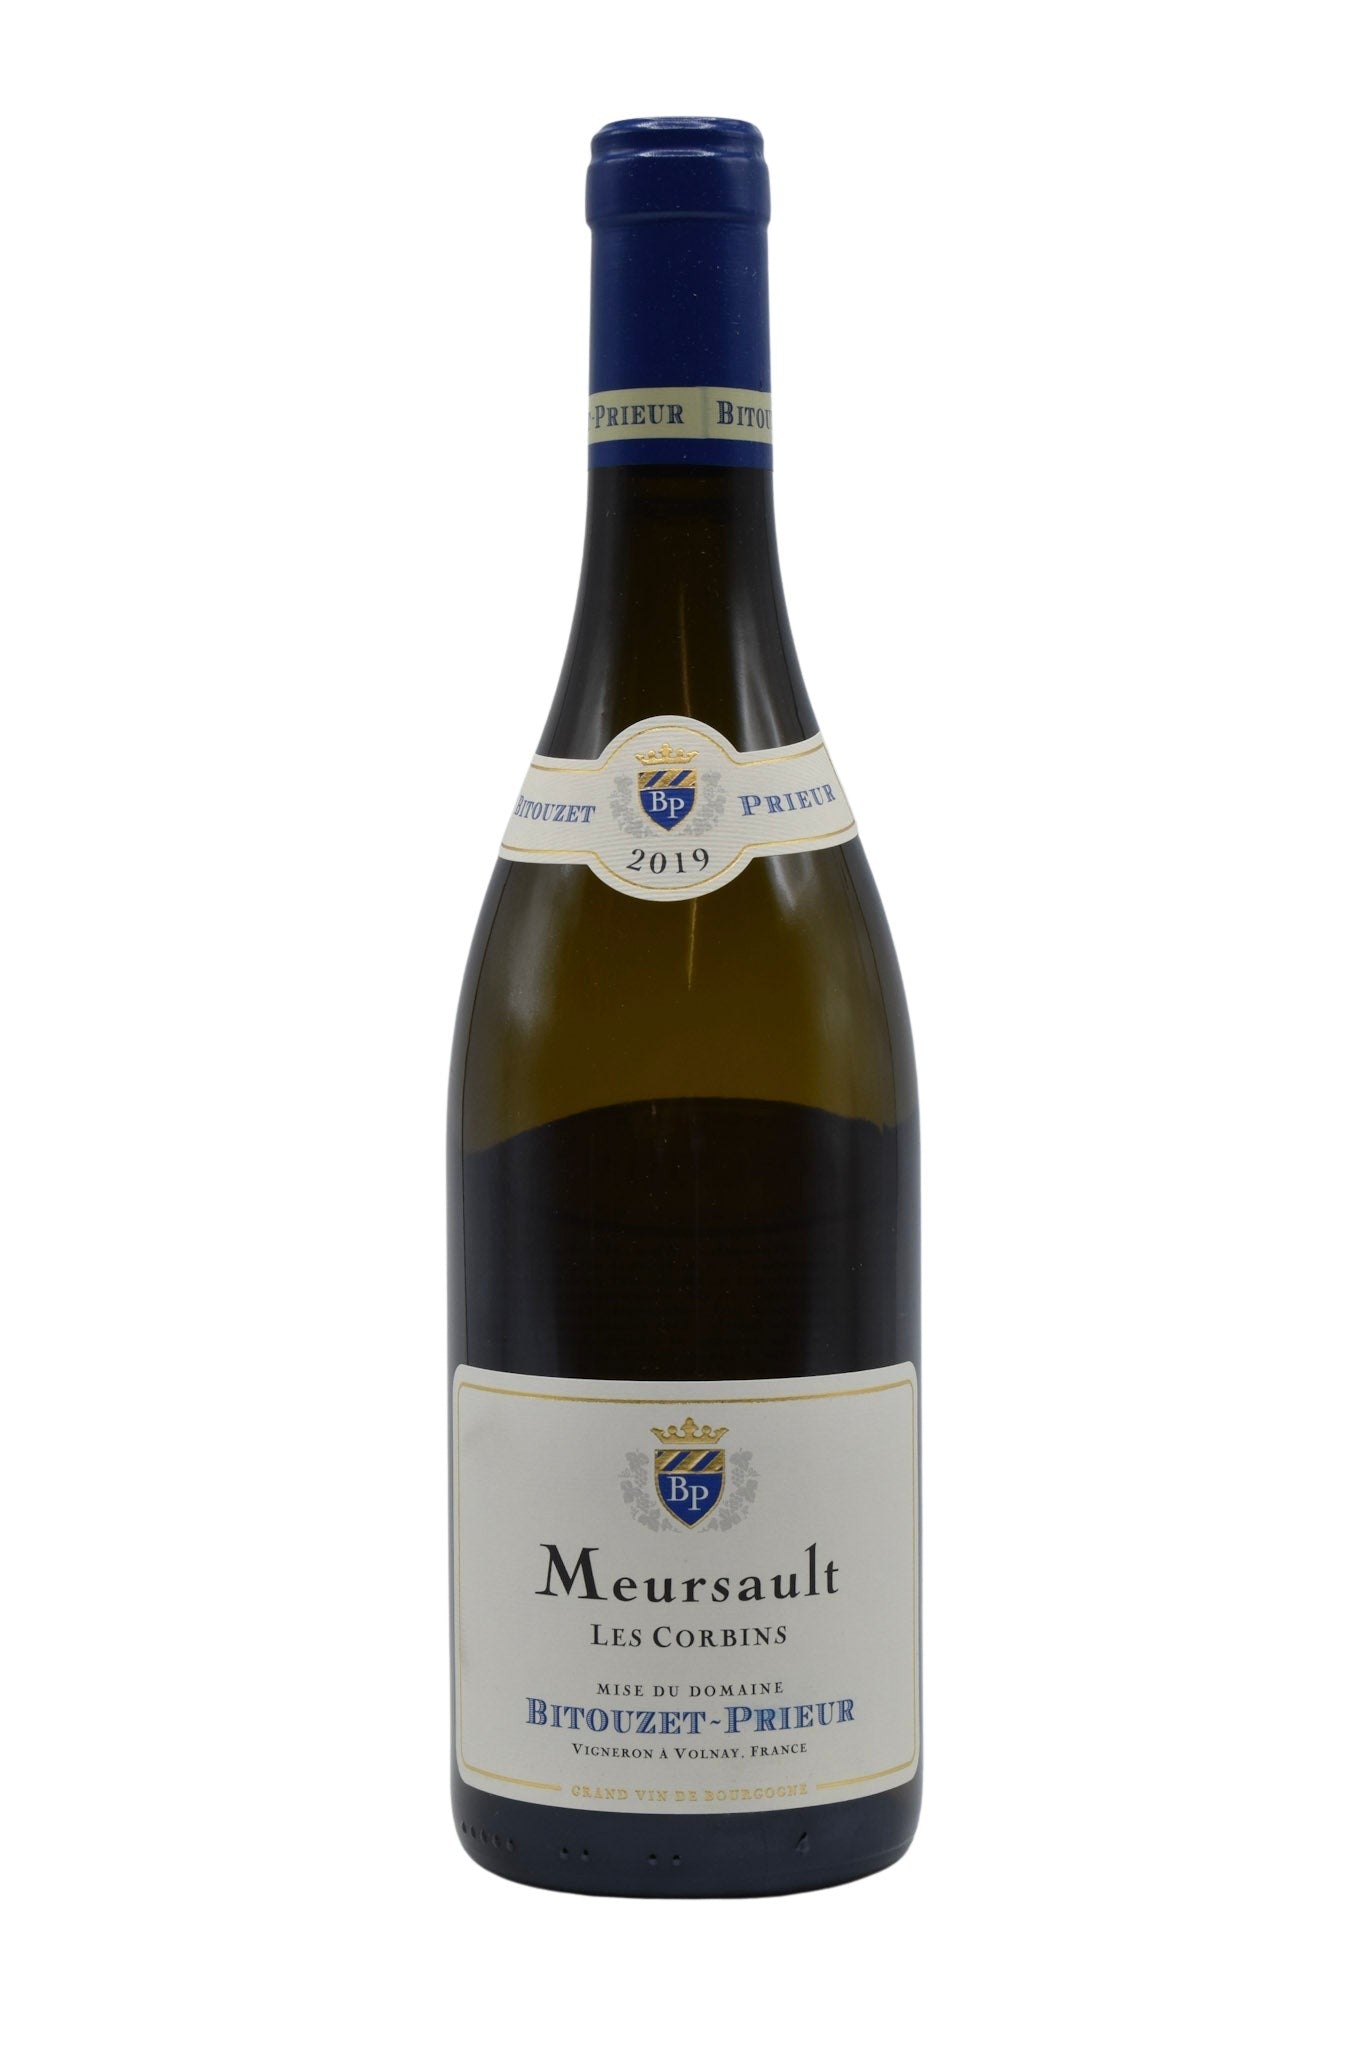 2019 Domaine Bitouzet-Prieur, Meursault les Corbins 750ml - Walker Wine Co.